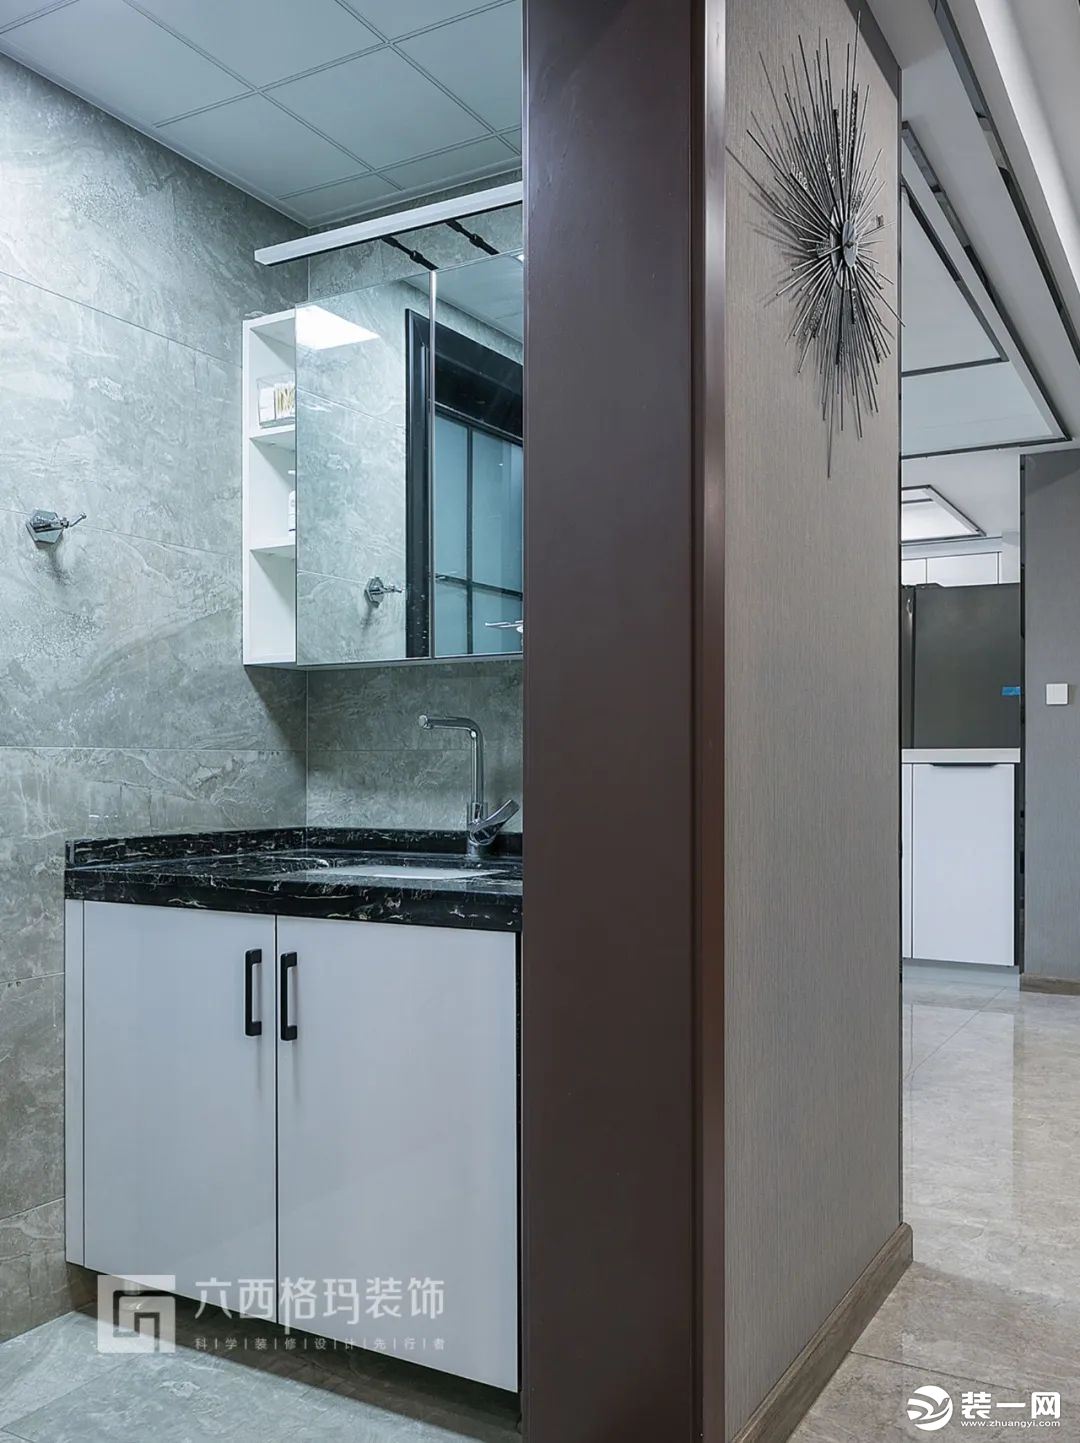 卫生间干湿分离，洗手台外置，灰色的墙地砖，看起来整体感非常强。浴室柜底部留空，清洁便利防止水的腐蚀，